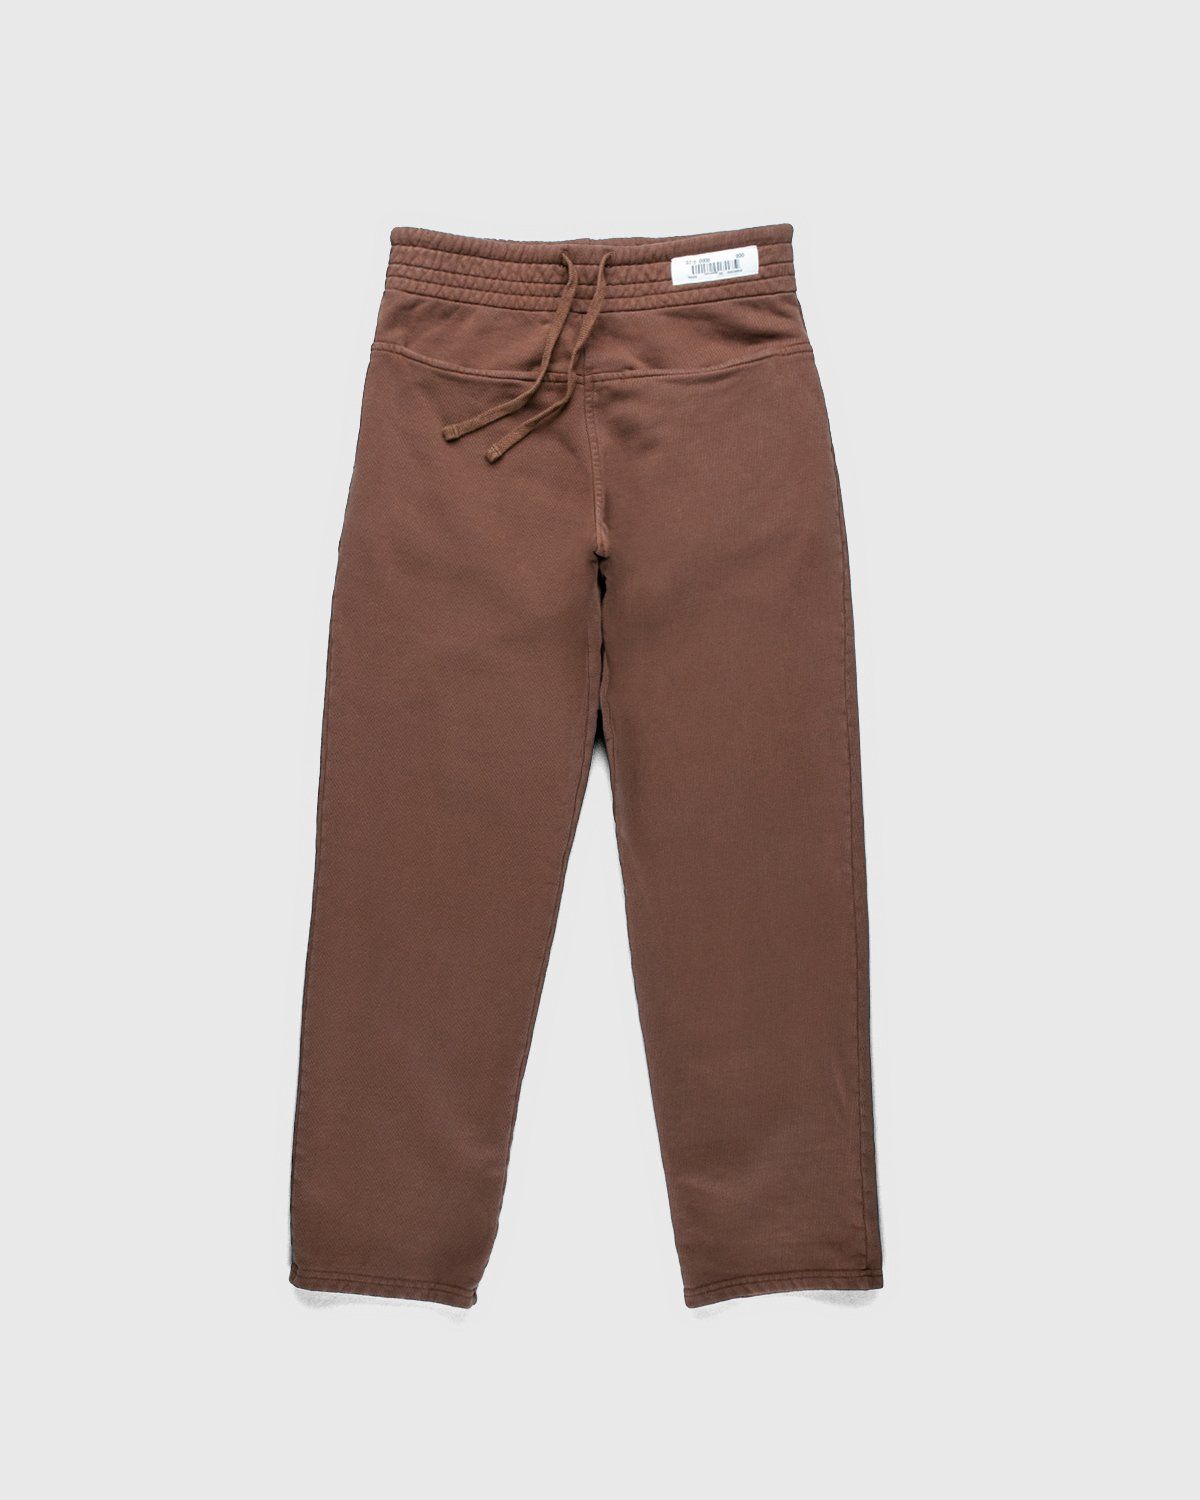 Darryl Brown – Gym Pants Coyote Brown - Pants - Brown - Image 1